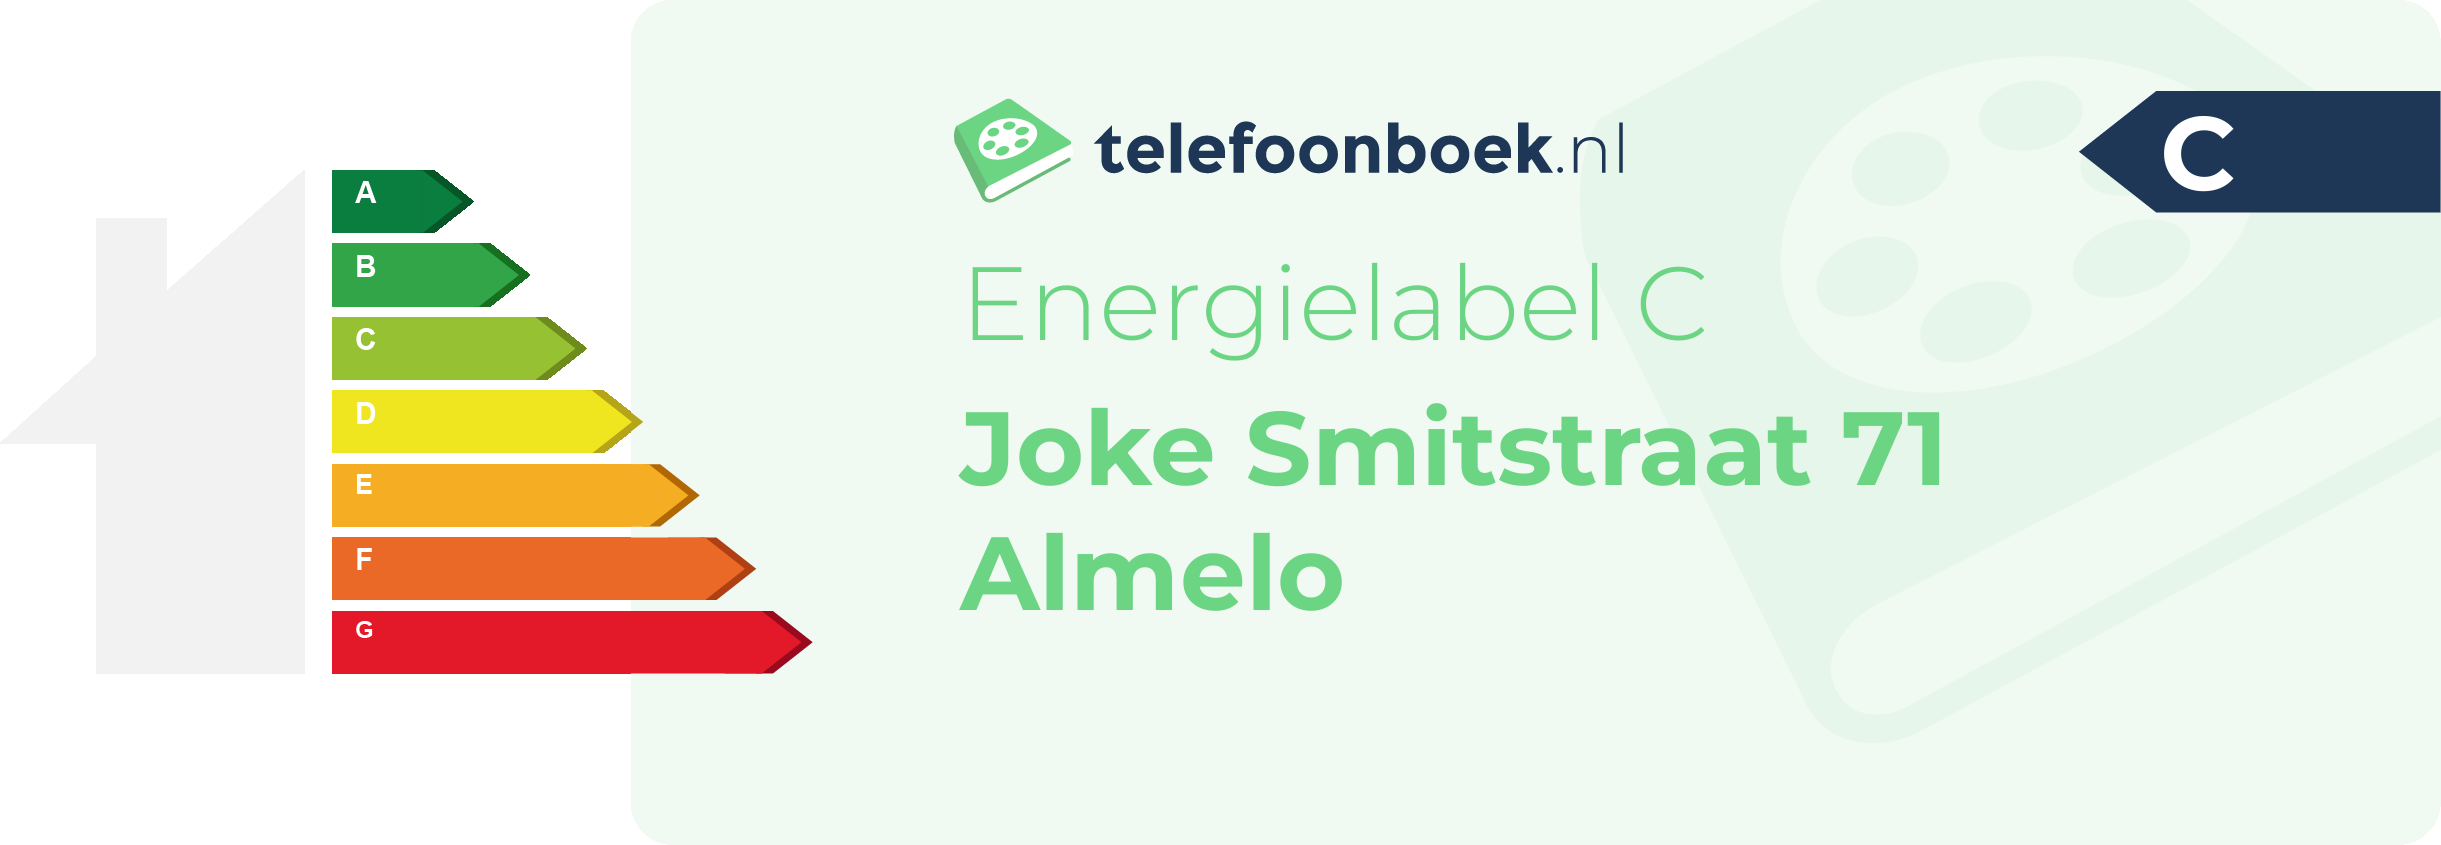 Energielabel Joke Smitstraat 71 Almelo